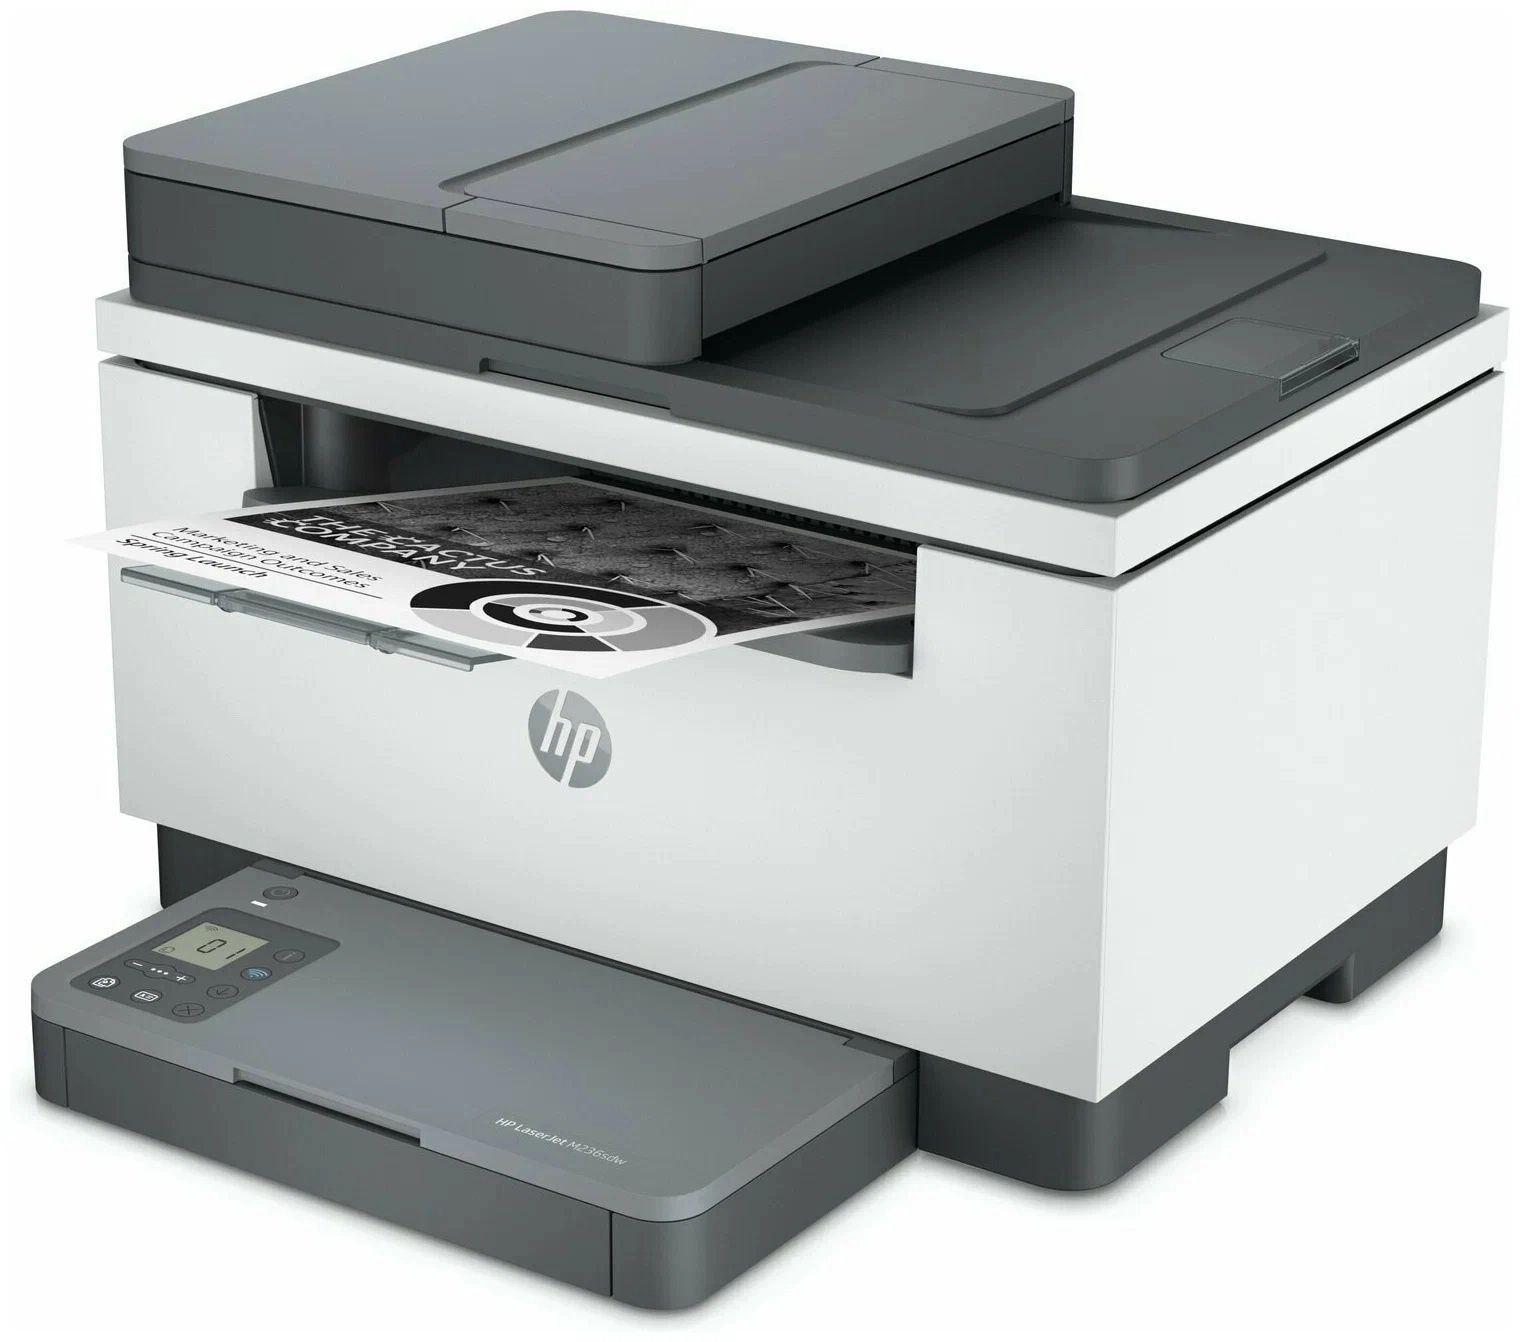 Новый Принтер HP LaserJet M236sdw (МФУ, лазерный, ч/б, A4).